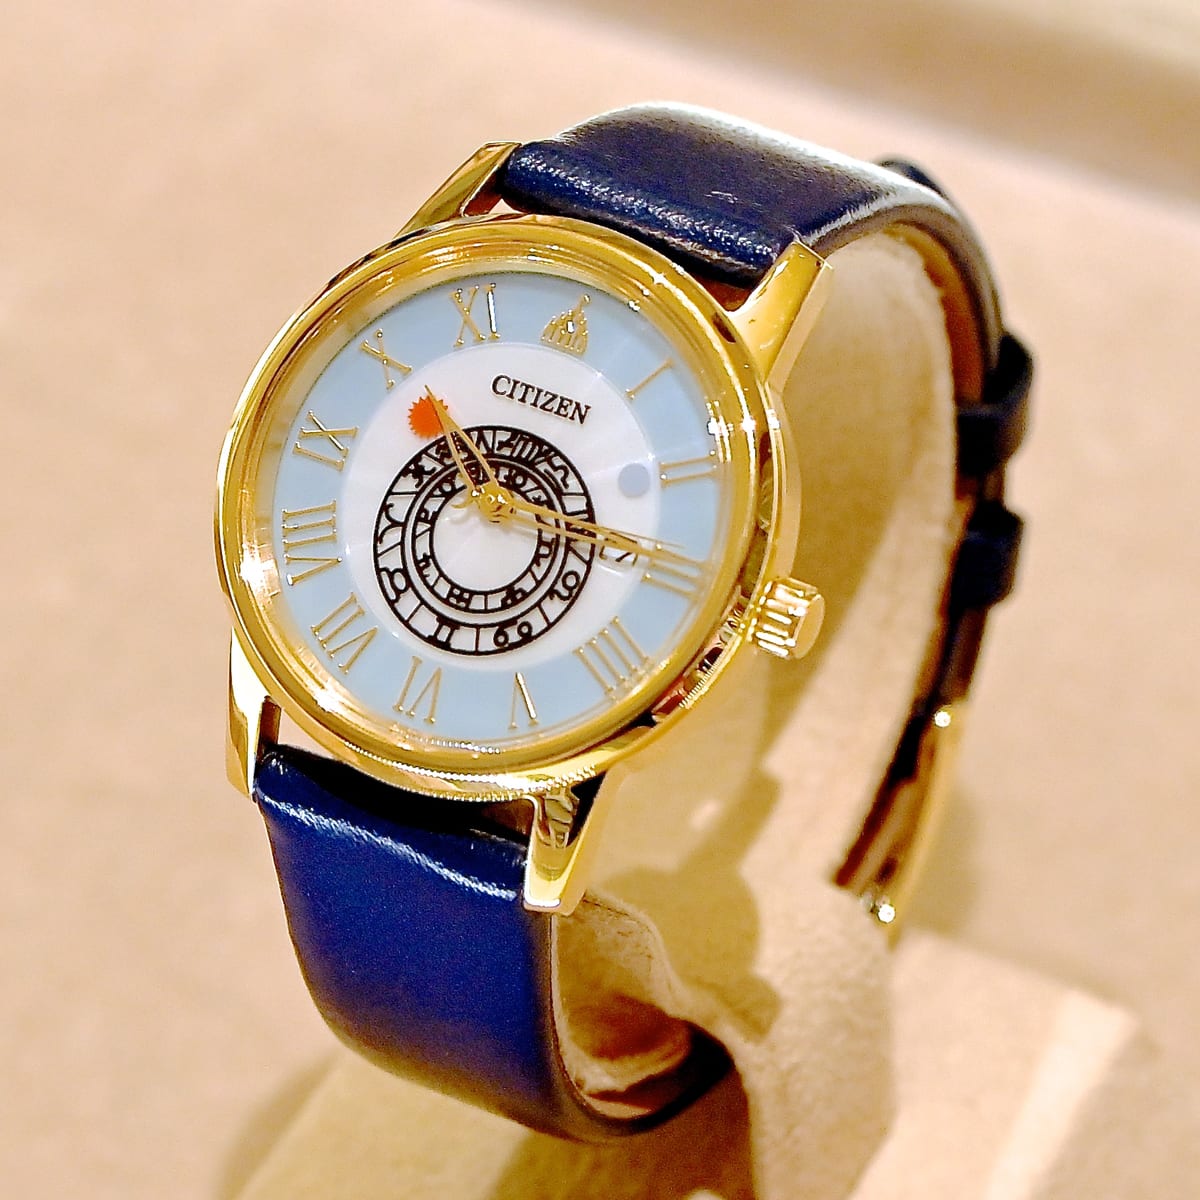 シンデレラ城モチーフ腕時計 | www.carmenundmelanie.at